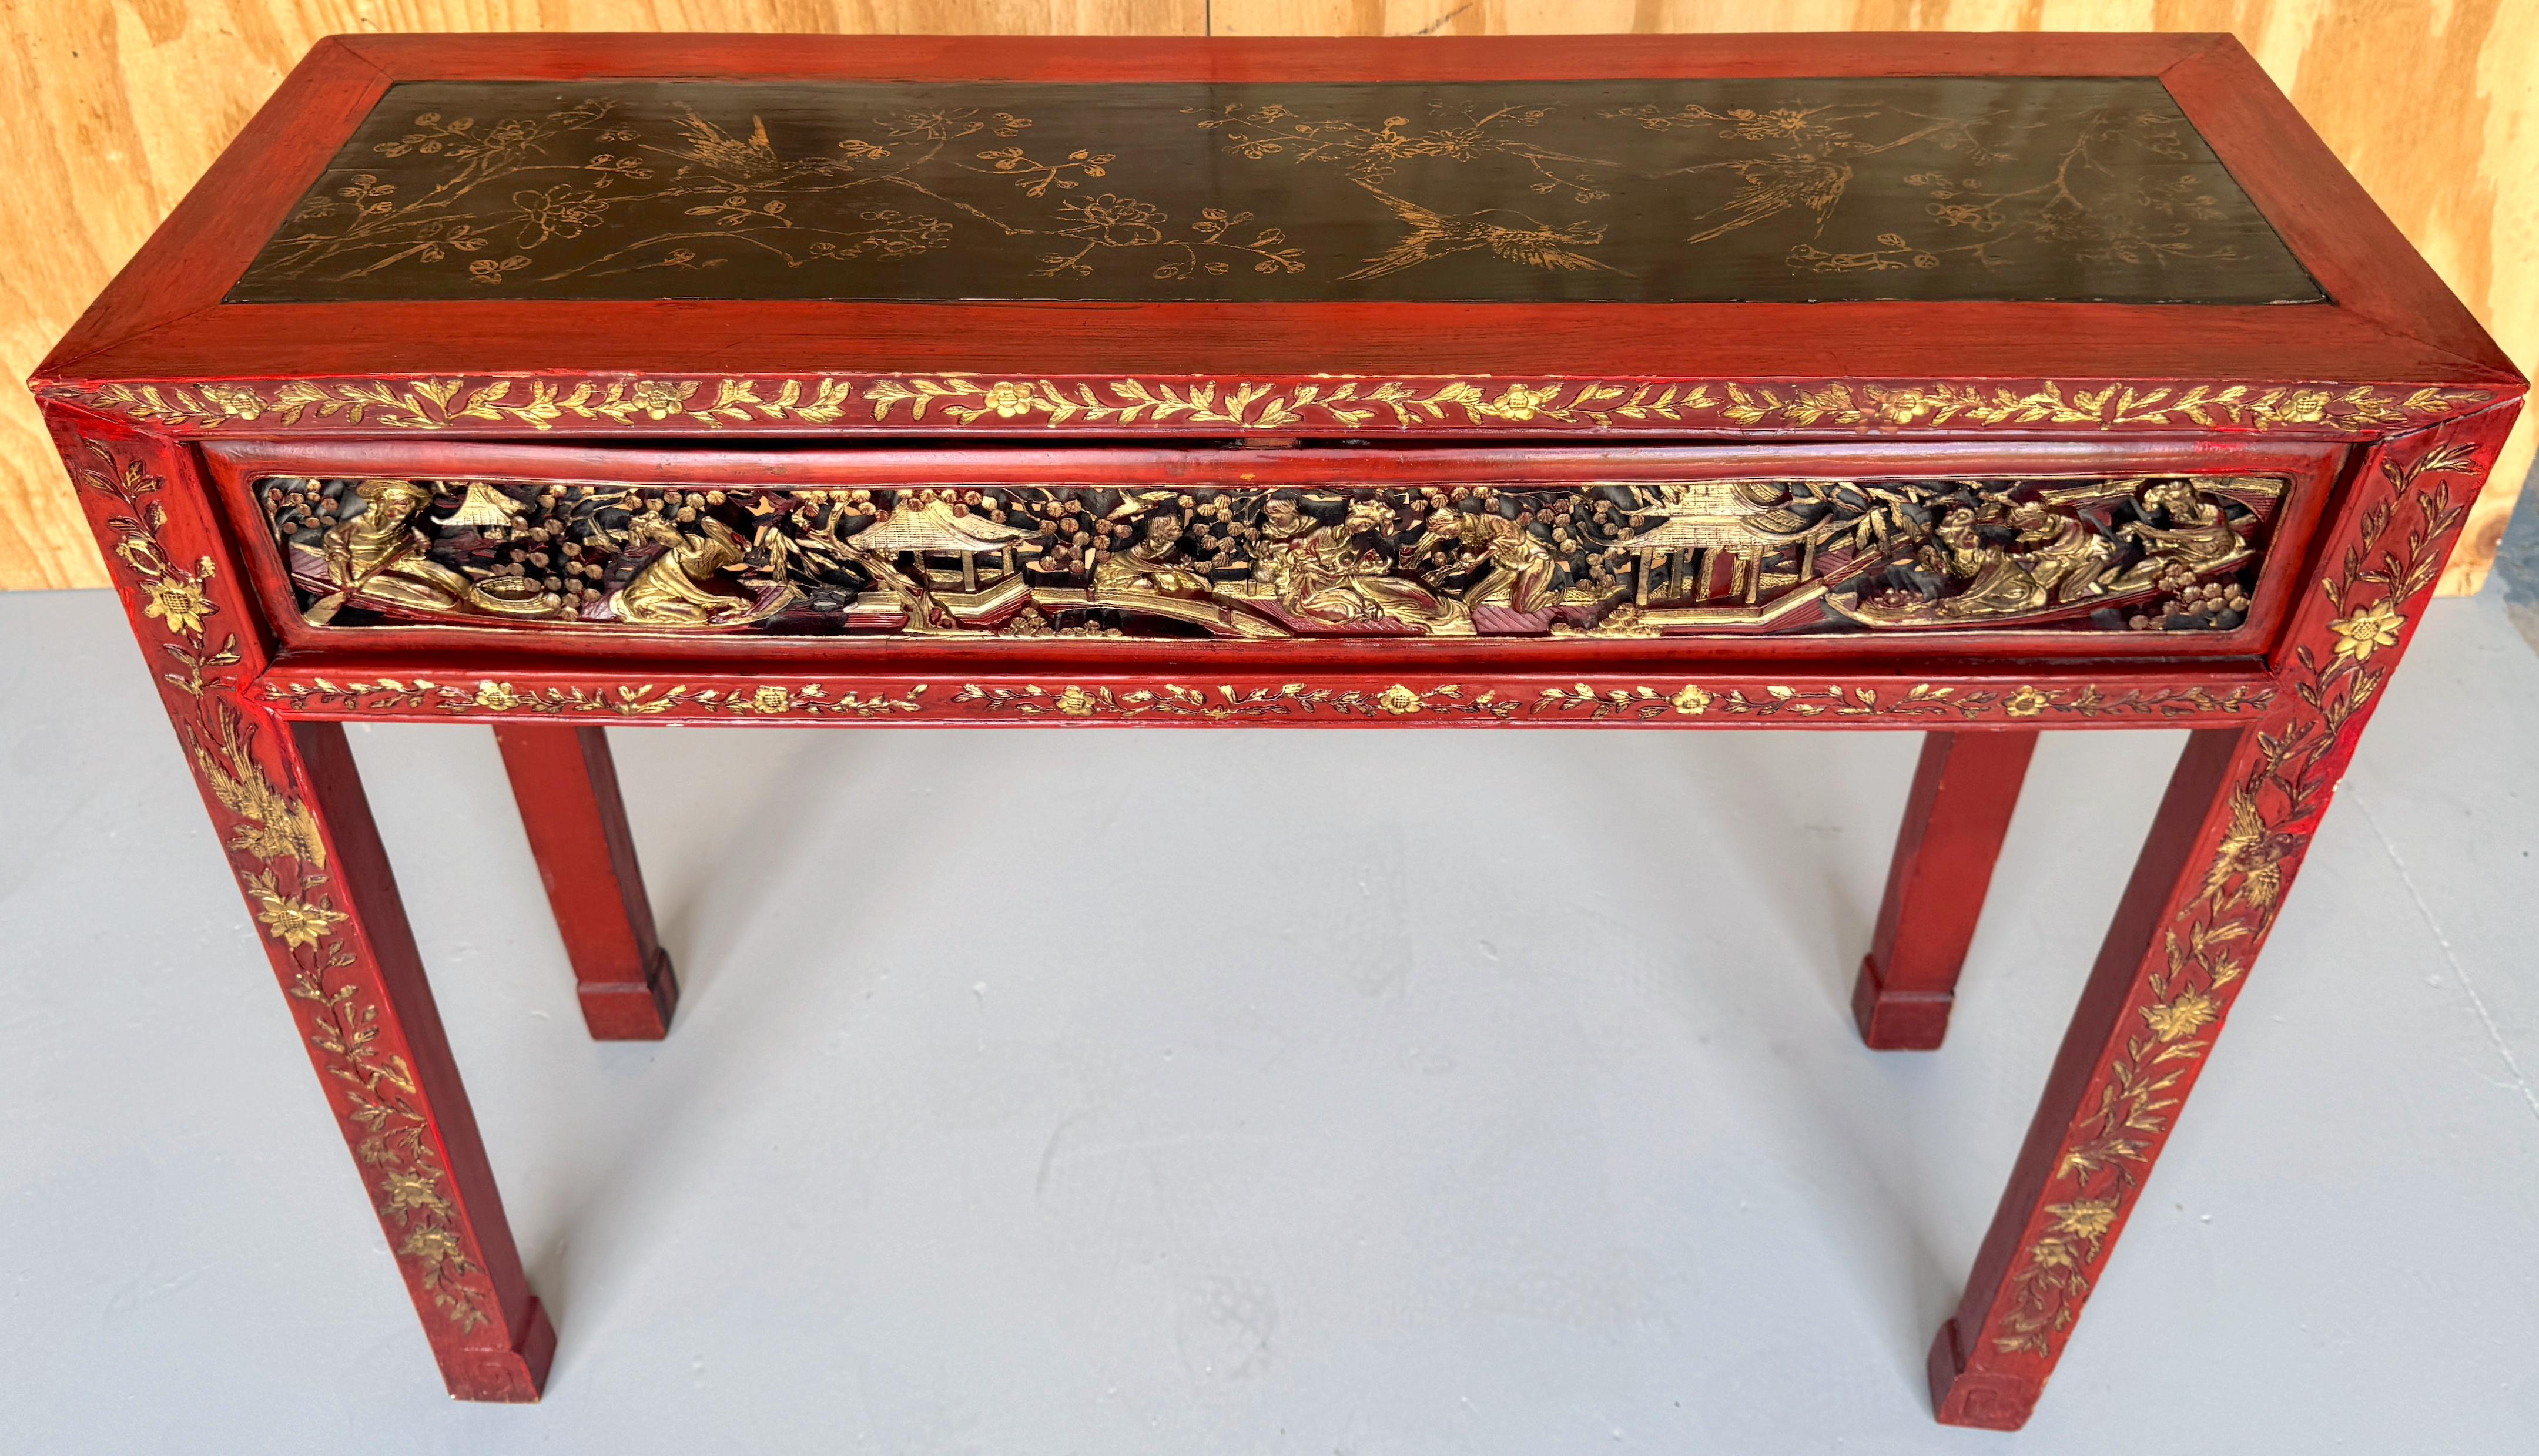 Table console chinoise en bois doré sculpté et laqué de la période Qing 
Chine, 19e siècle

Un exemple étonnant de l'élégance de la période Qing dans le mobilier chinois. Datant du XIXe siècle, cette table console en bois doré sculpté et laqué de la